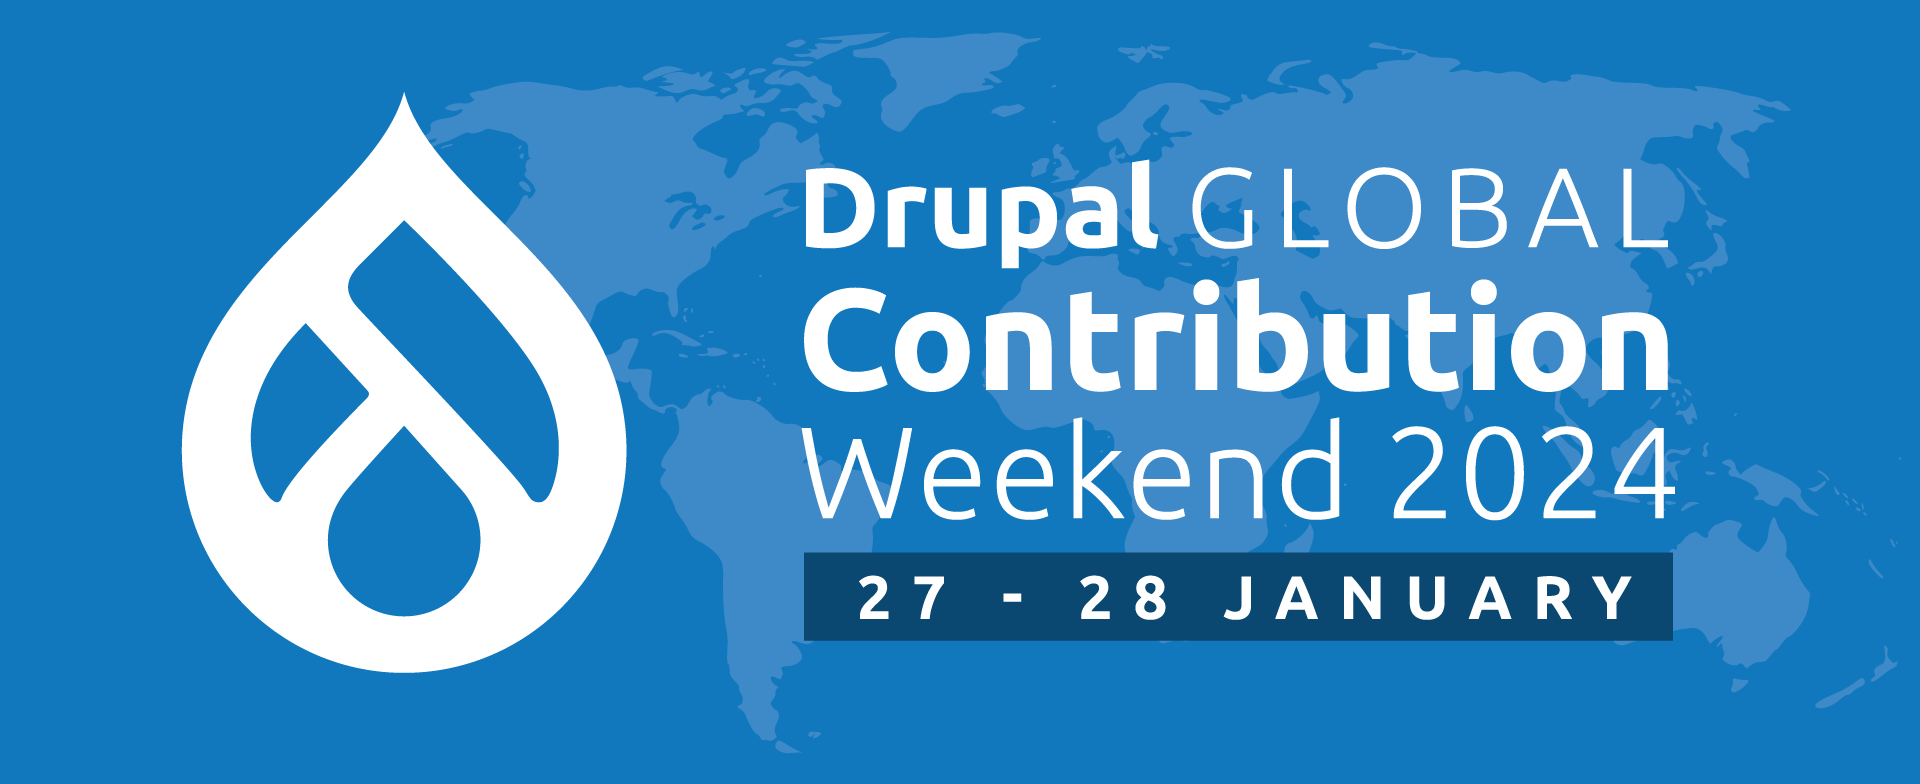 Drupal signet, Drupal Global Sprint Weekend 2023, date in byline, blue background with world map